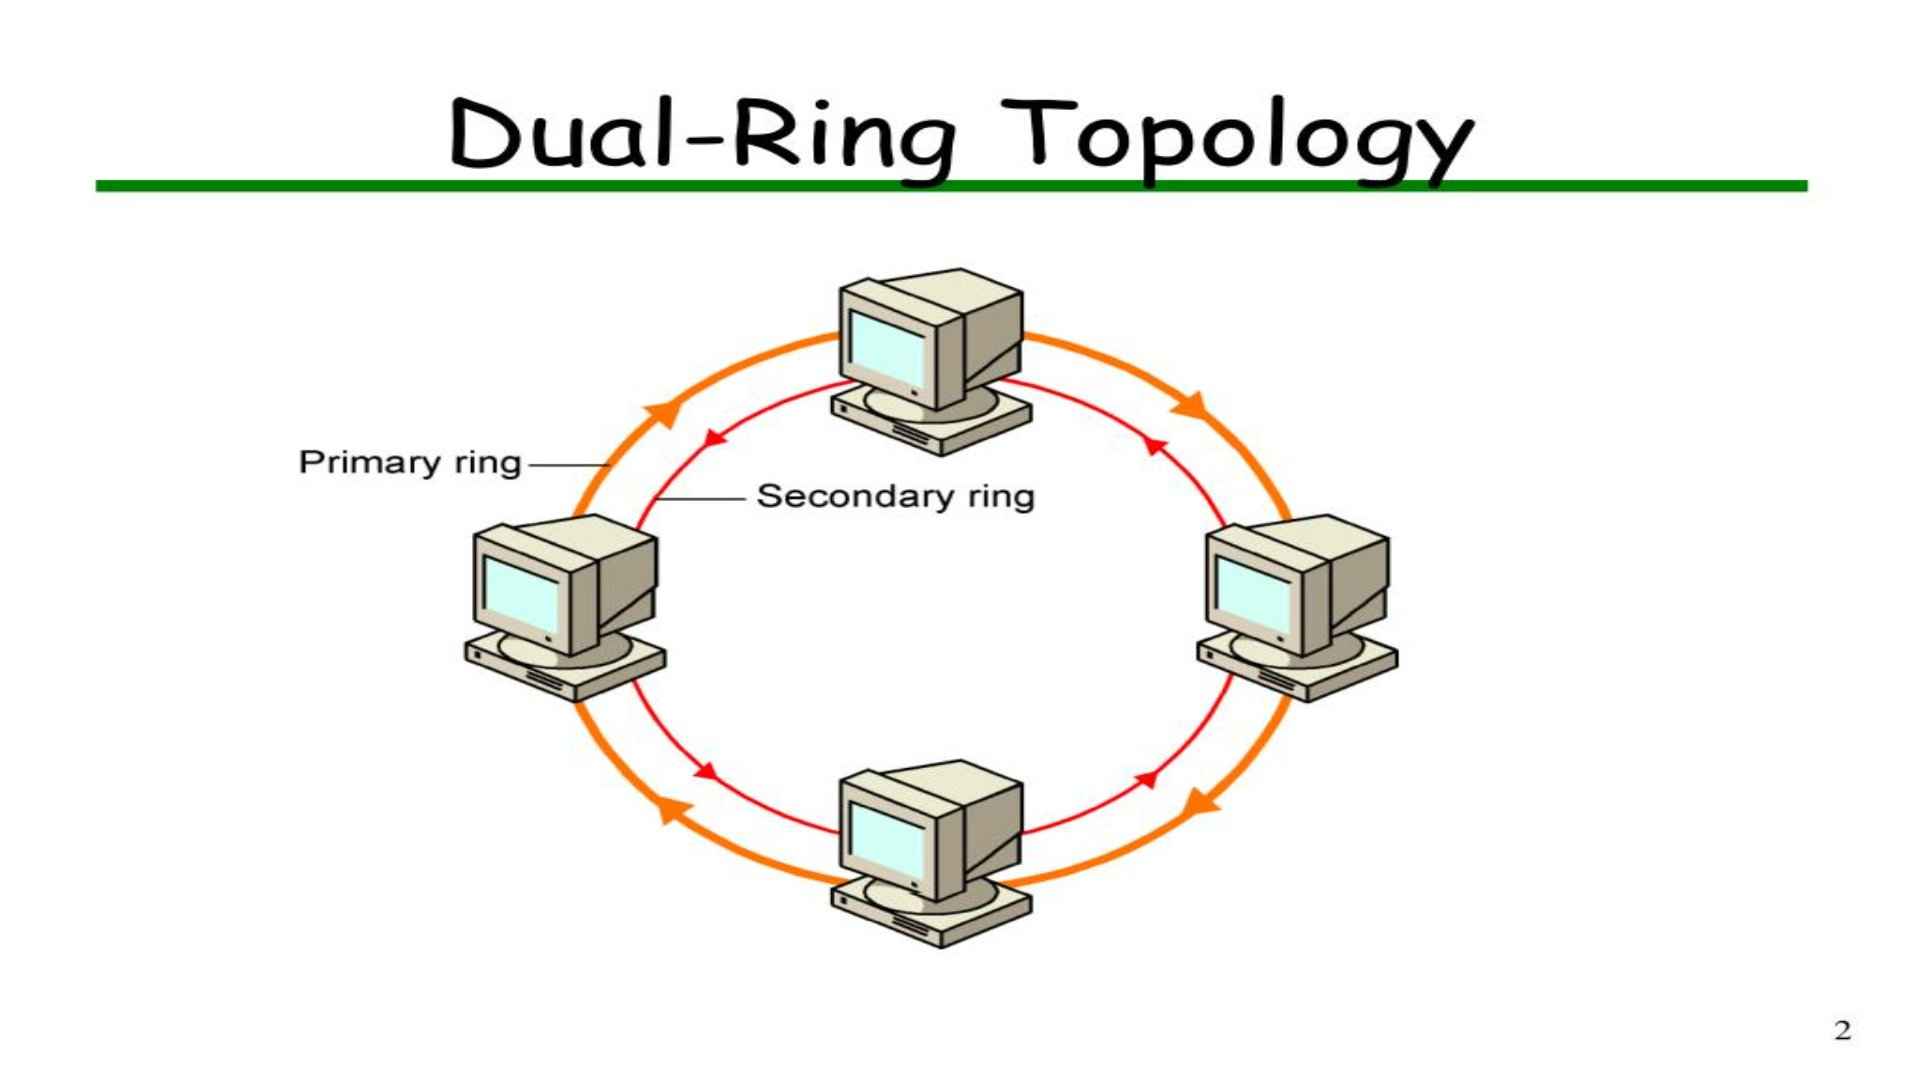 Perbedaan topo logi ring dan  dual ring topo logi.jpg